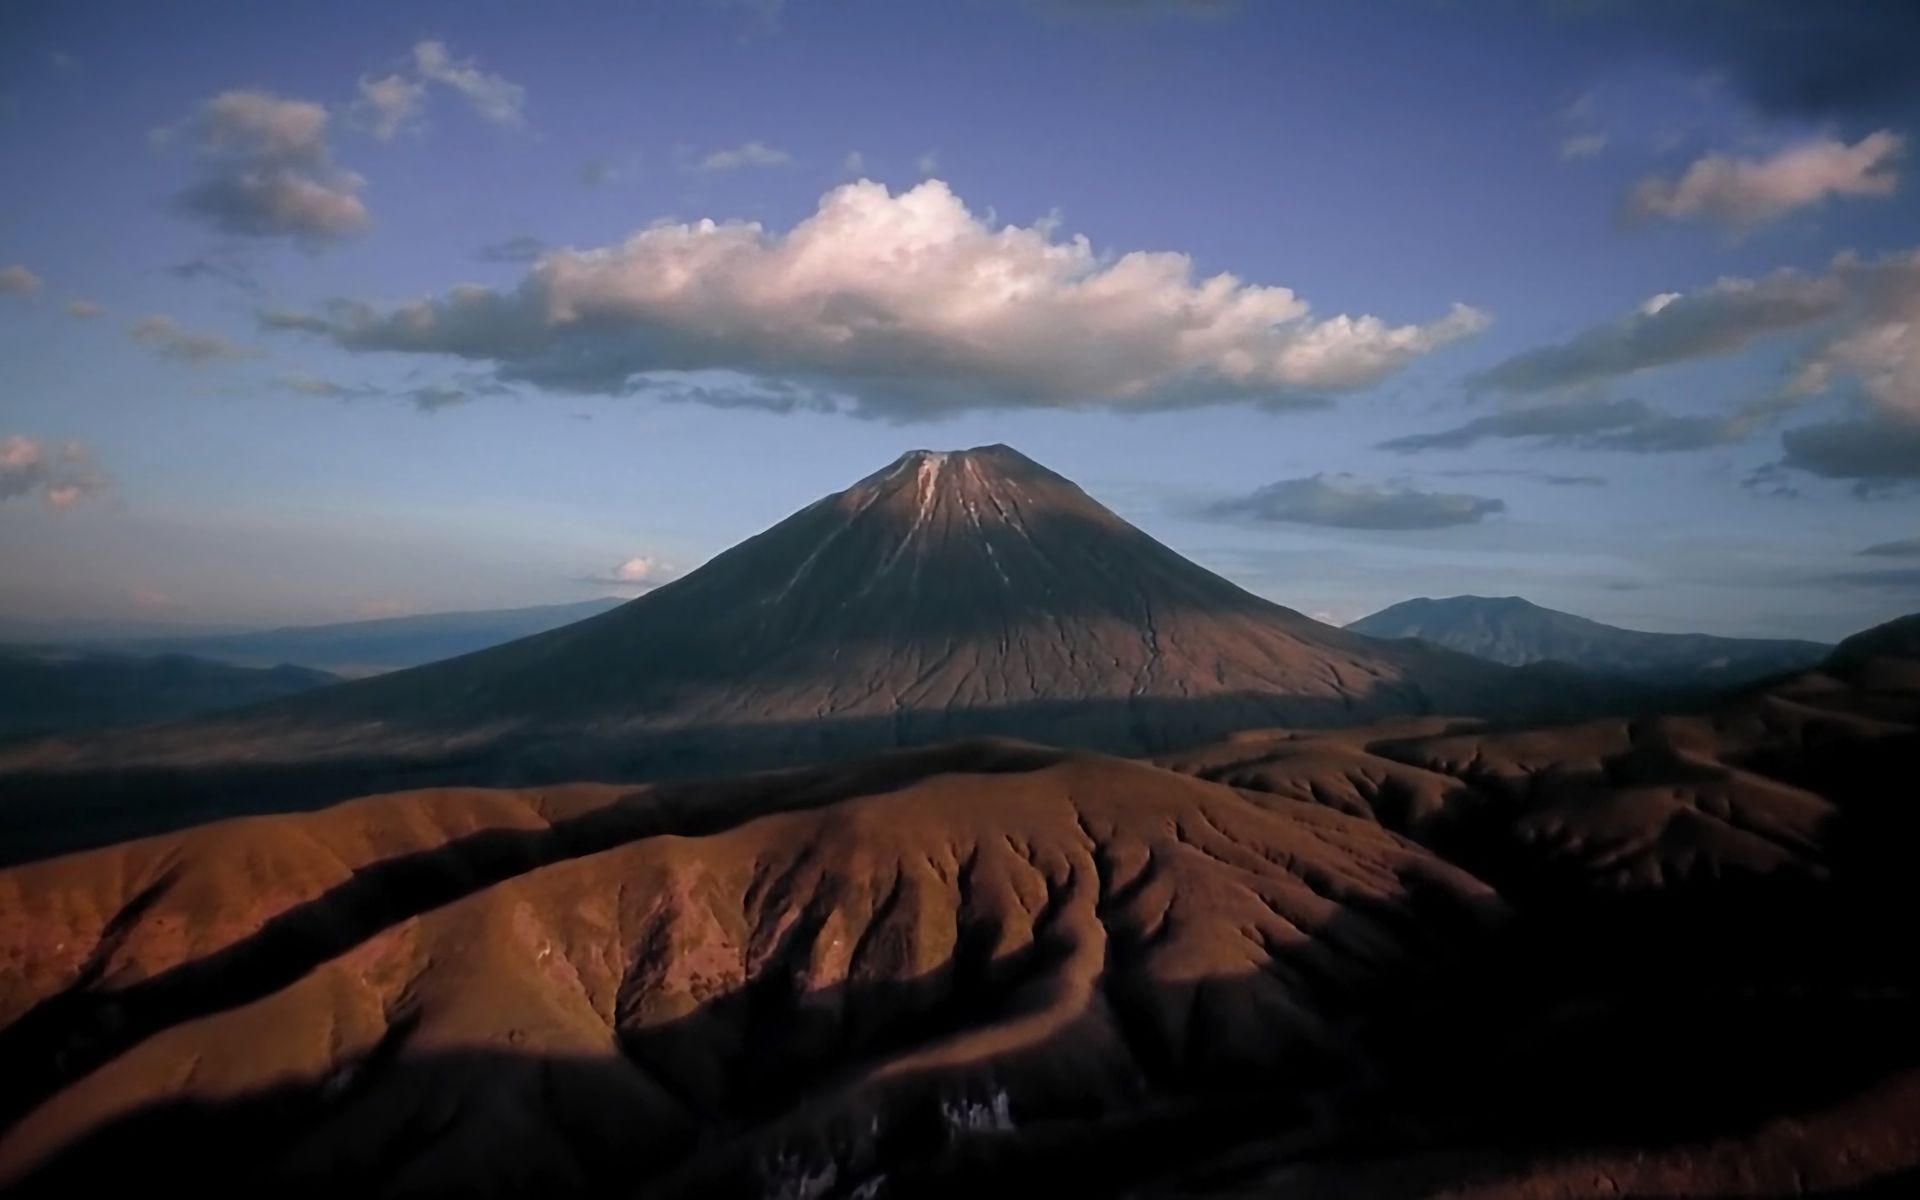 Скачать обои Гора Килиманджаро на телефон бесплатно